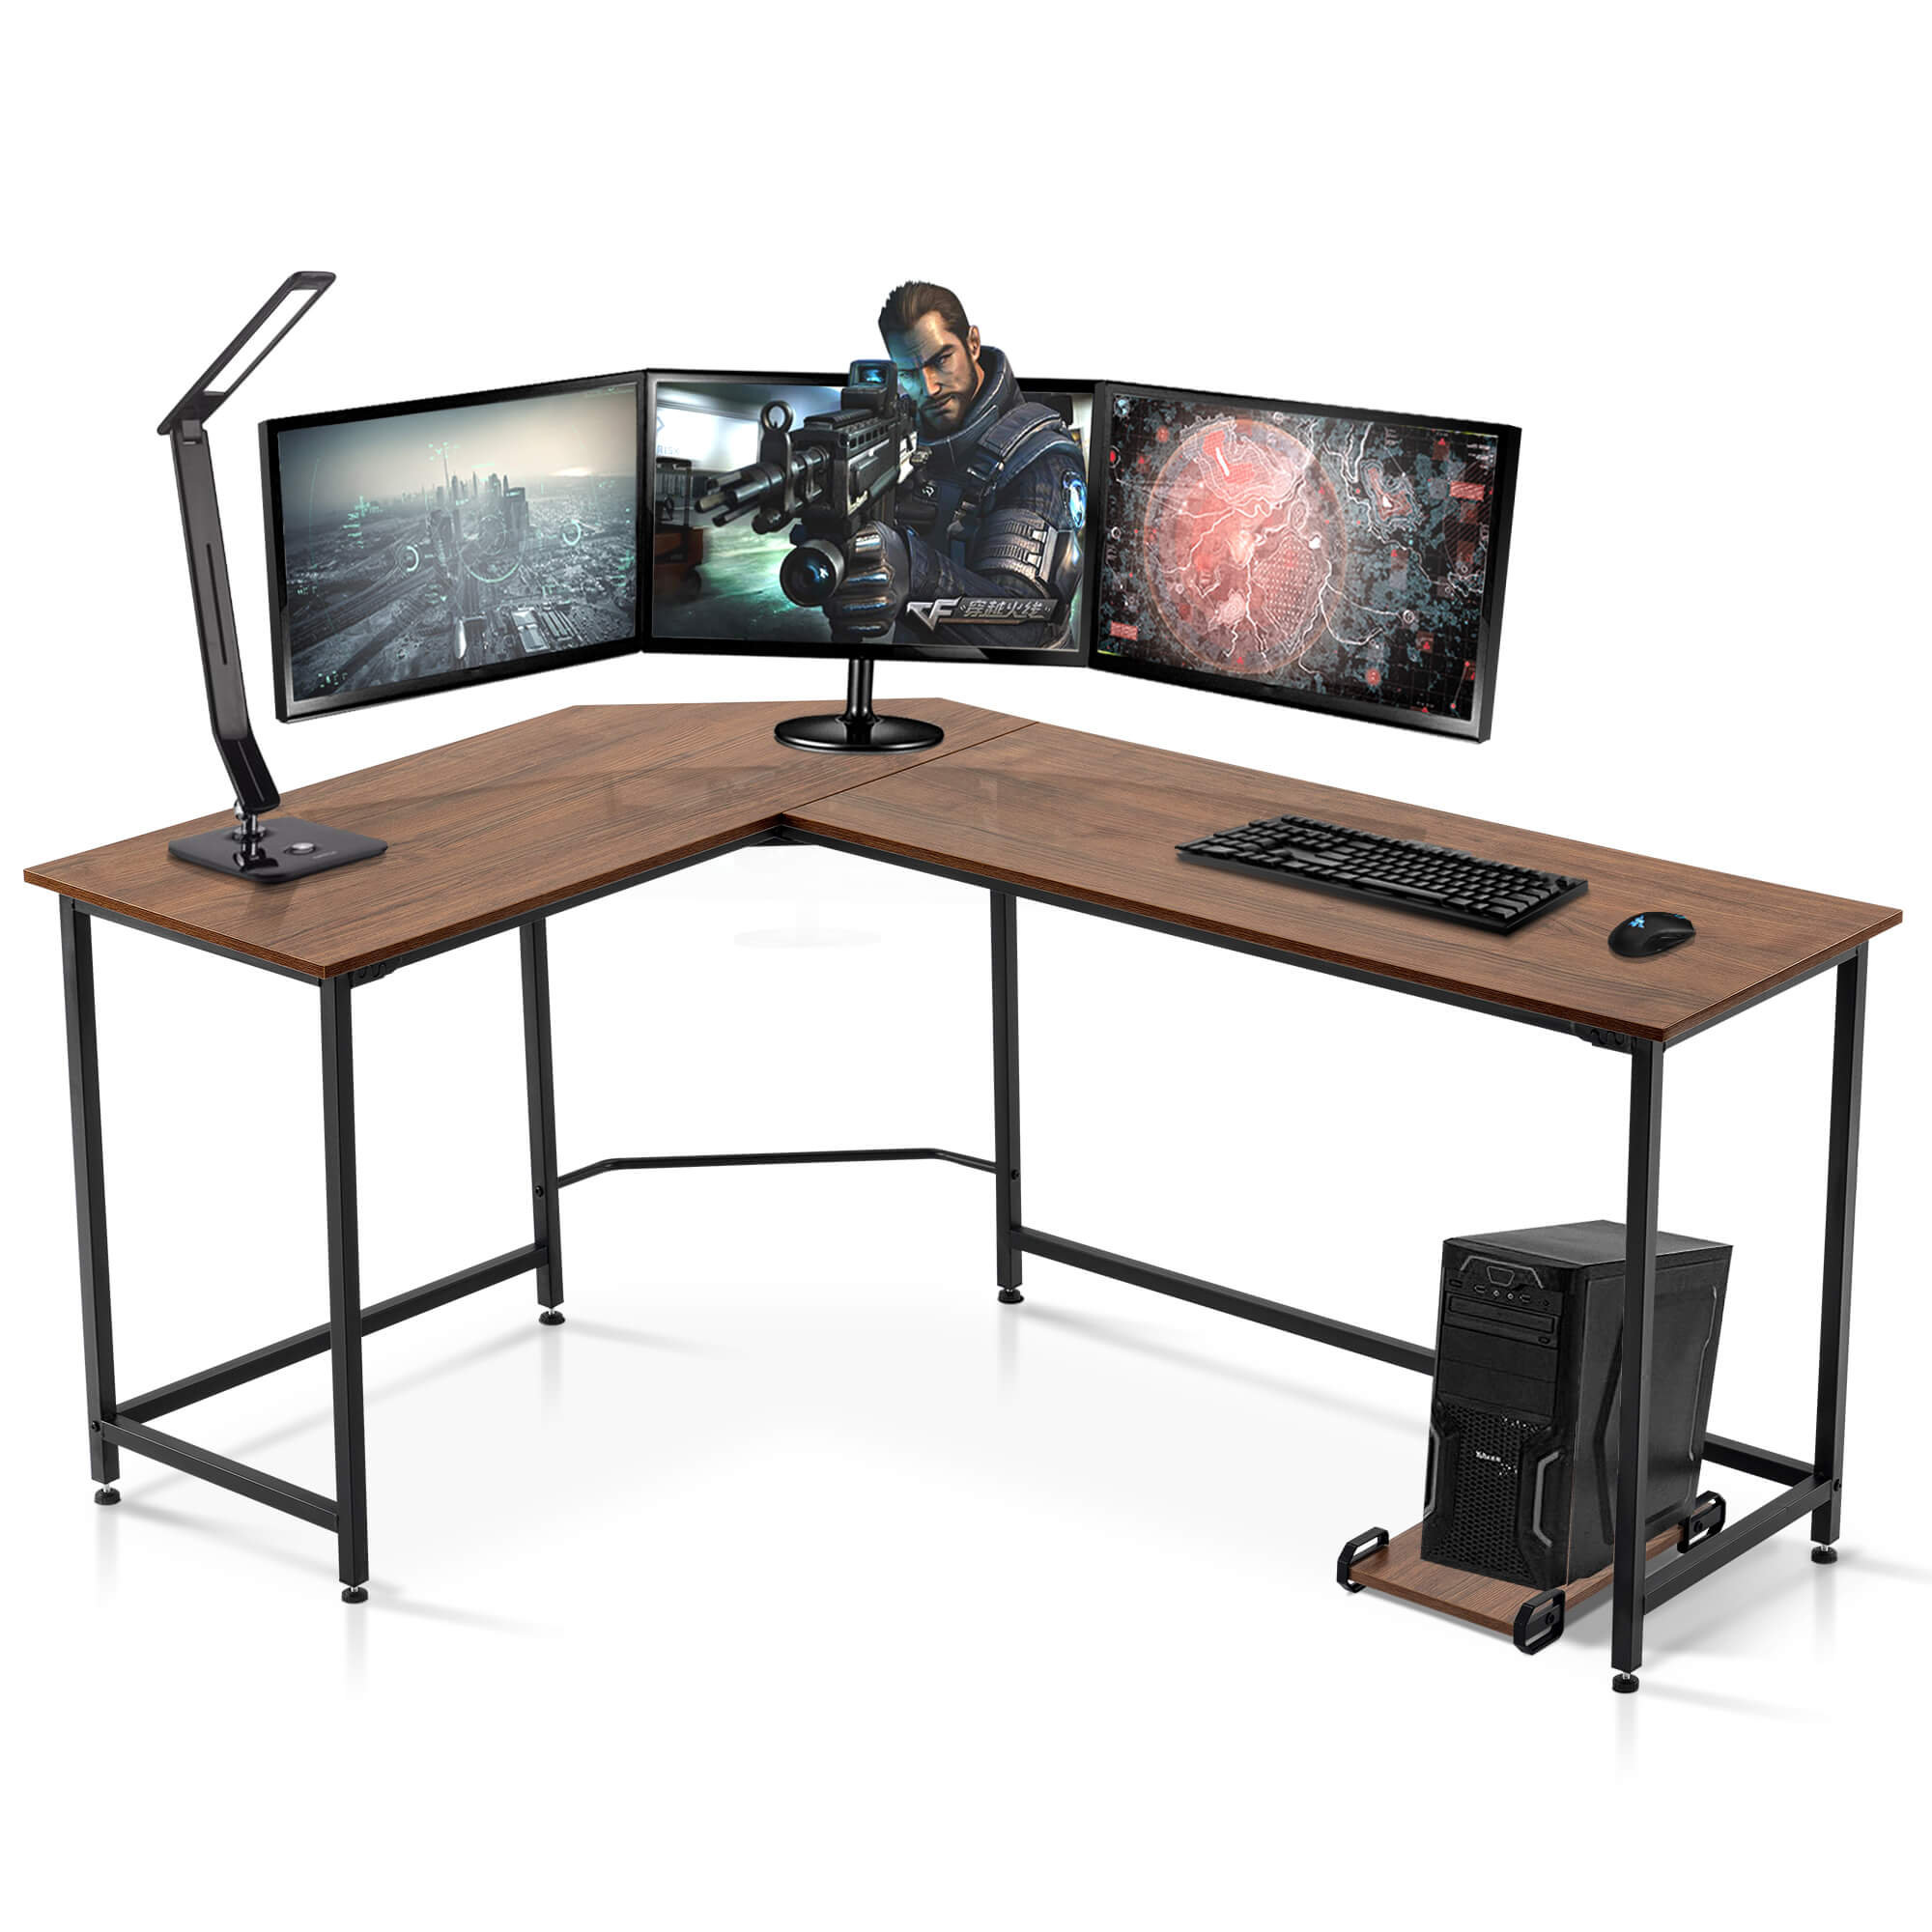 https://assets.wfcdn.com/im/93666762/compr-r85/2474/247444016/computer-l-shaped-desk-corner-gaming-desk-for-home-and-office.jpg